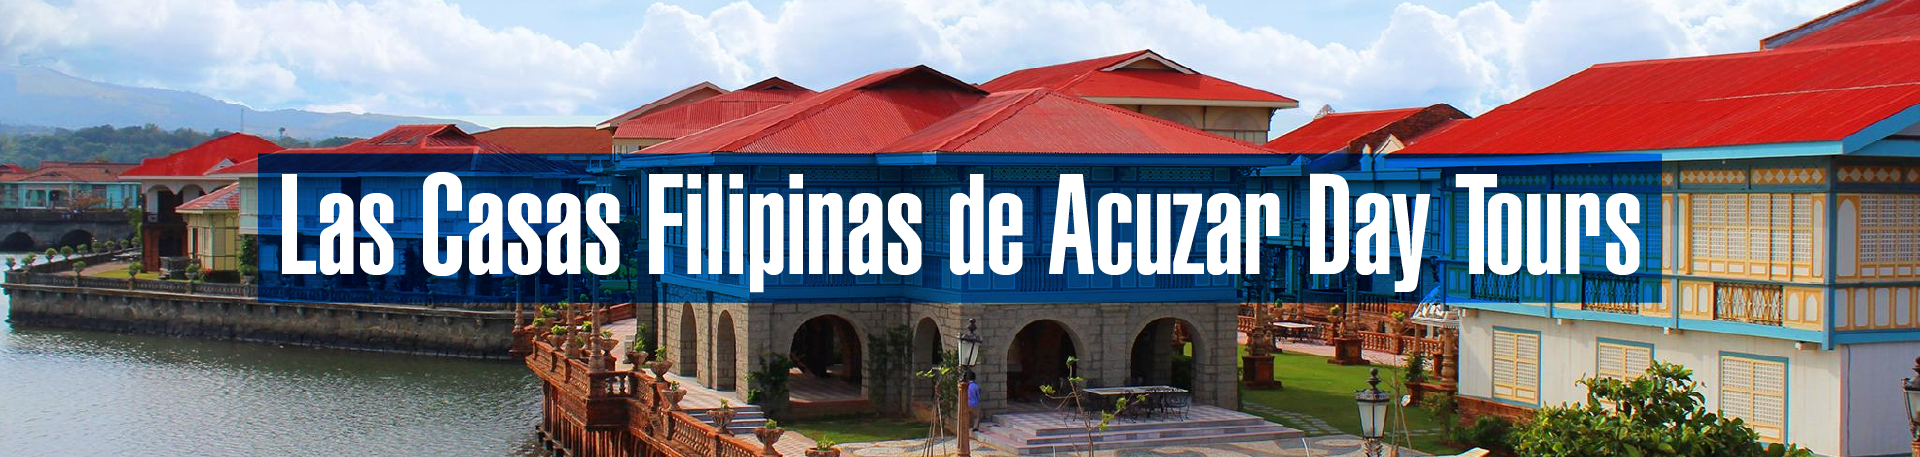 Las Casa Filipinas de Acuzar, Bataan